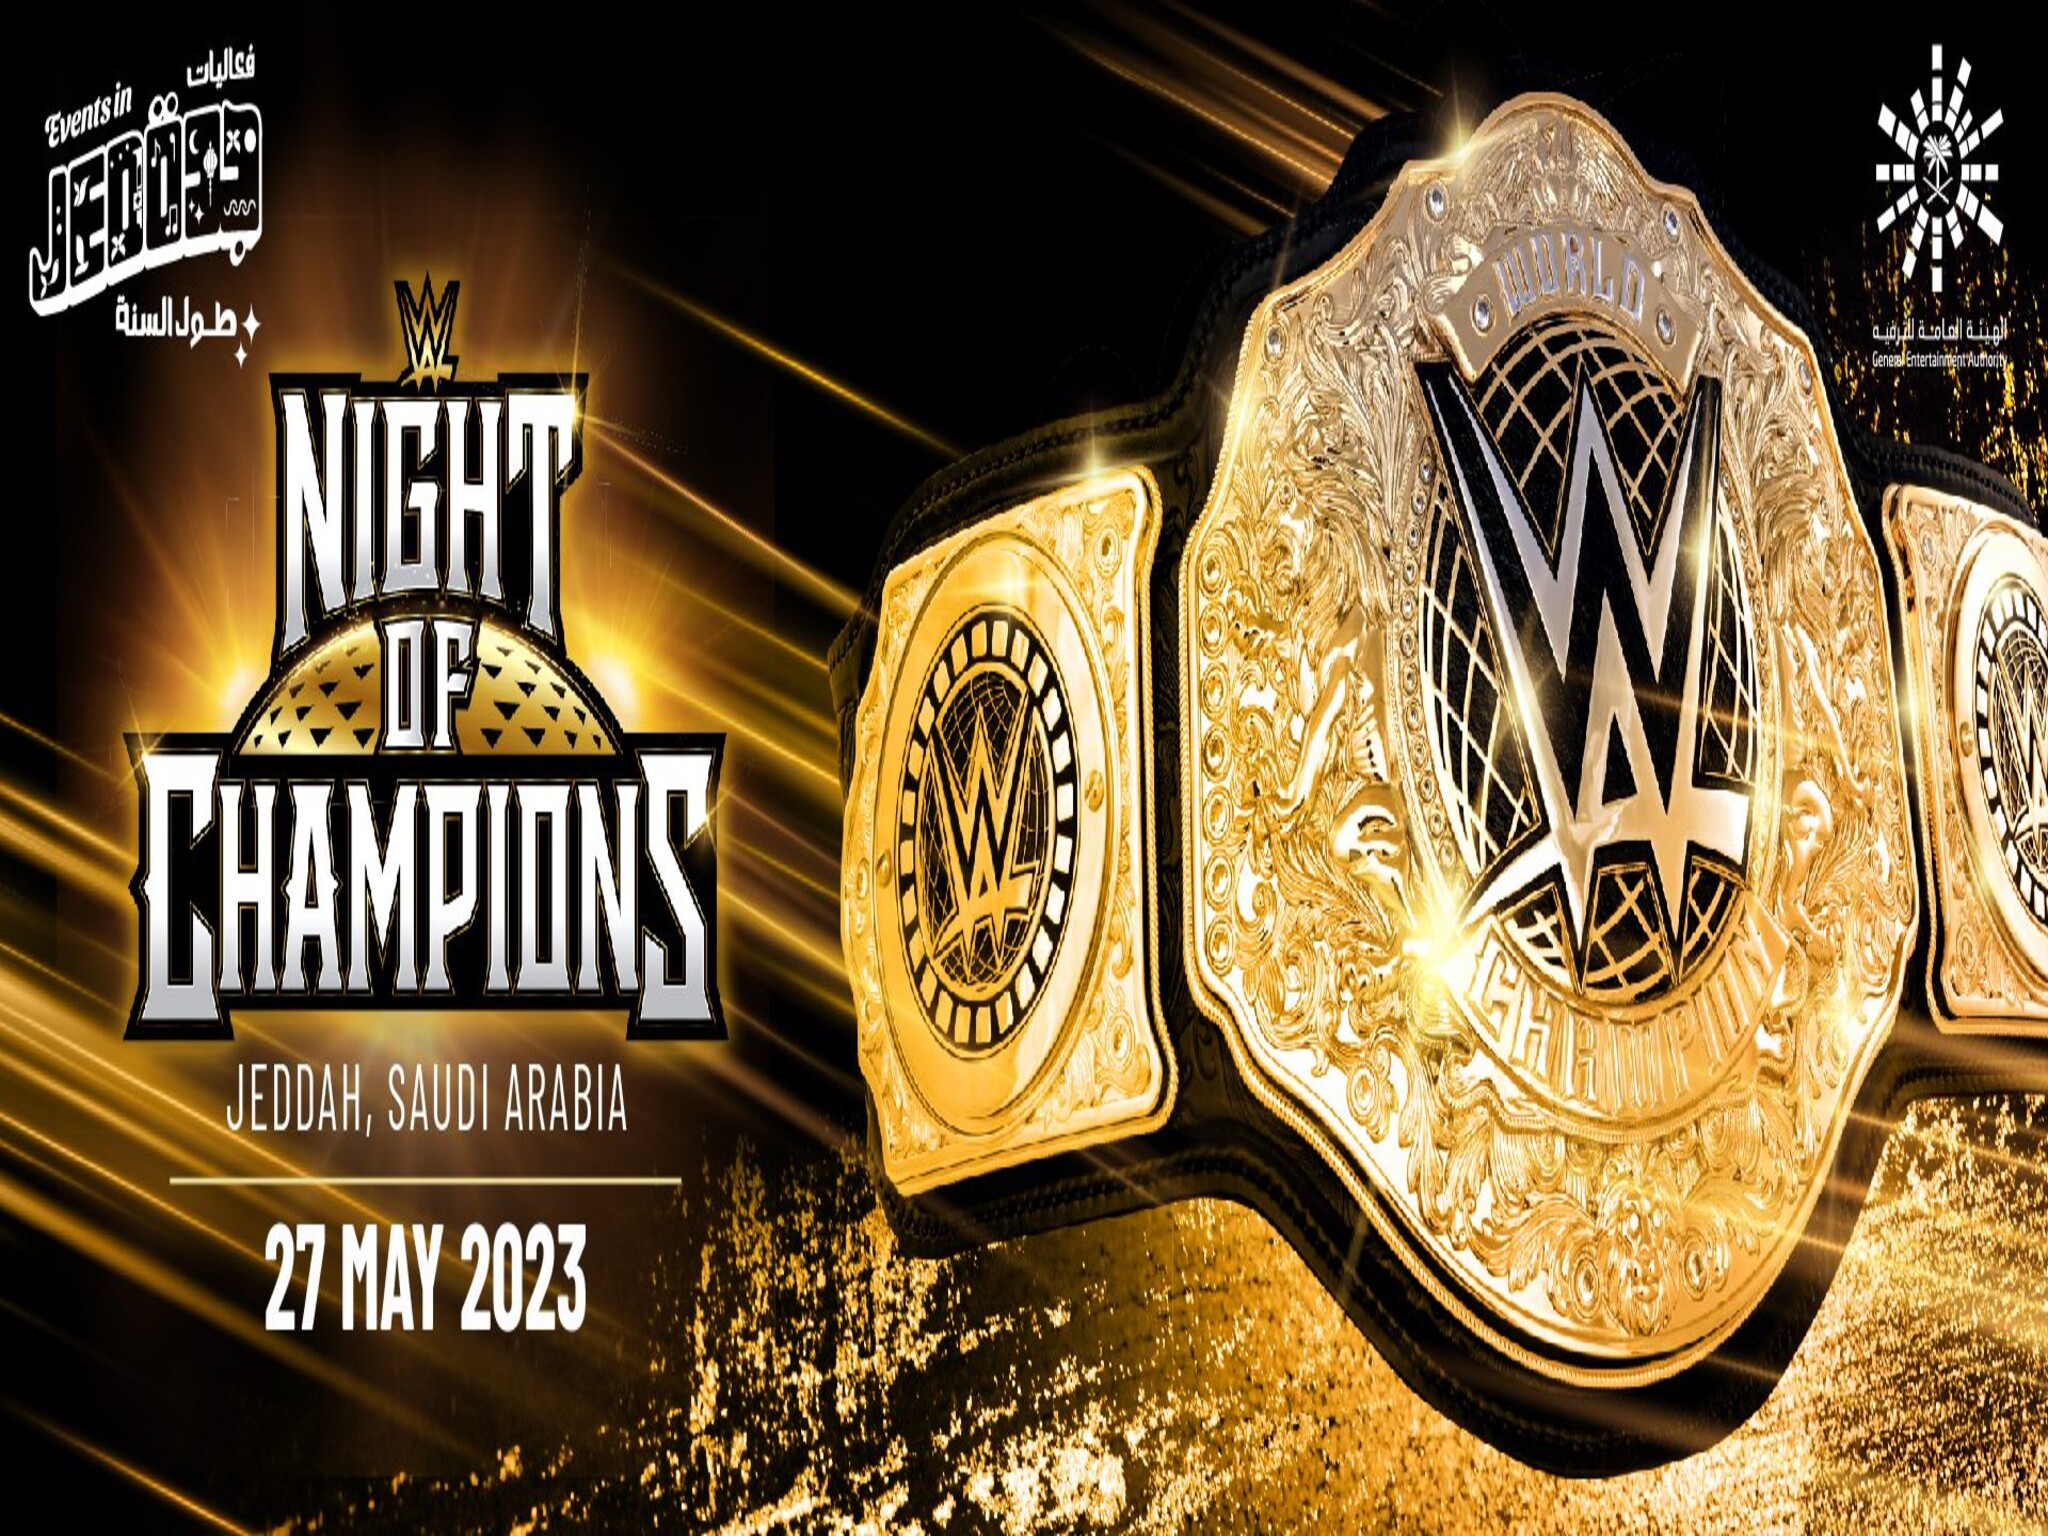 مدينة جدة تستعد لإستضافة نجوم المصارعة العالمية WWE "عرض ليلة الأبطال"